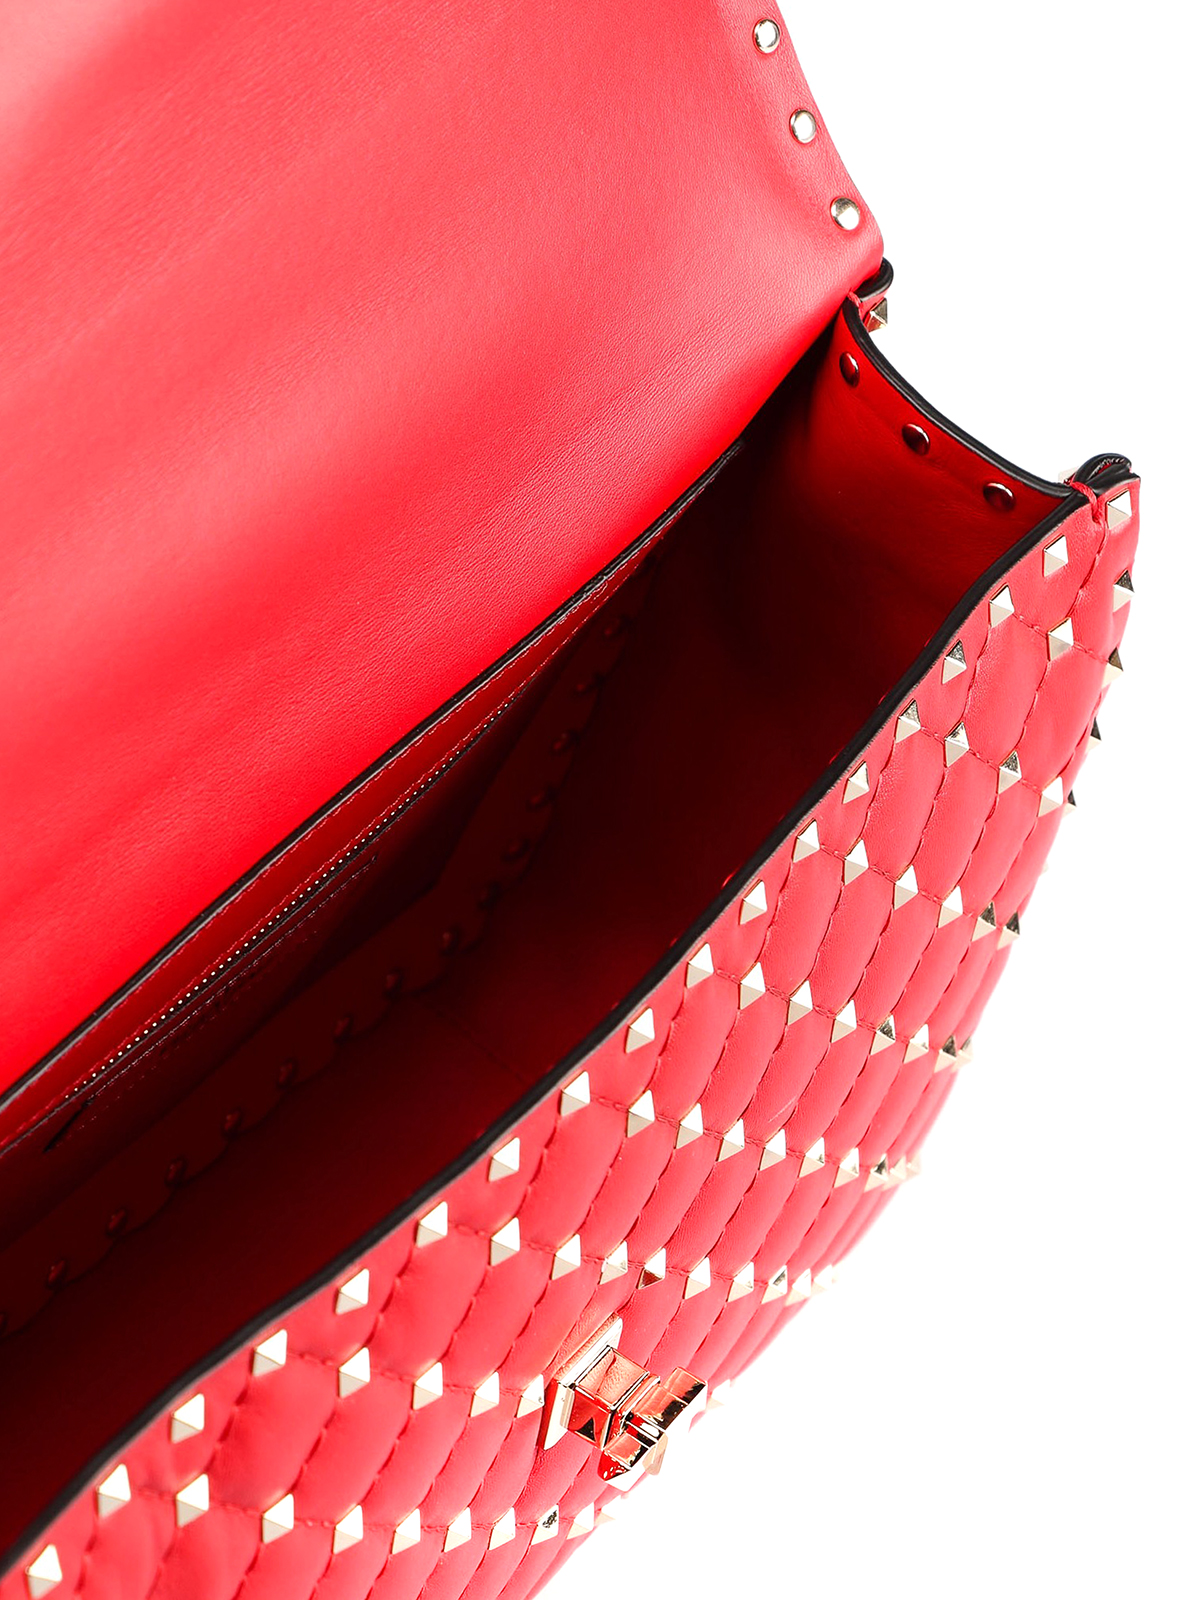 Shoulder bags Valentino Garavani - Rockstud Spike large red bag